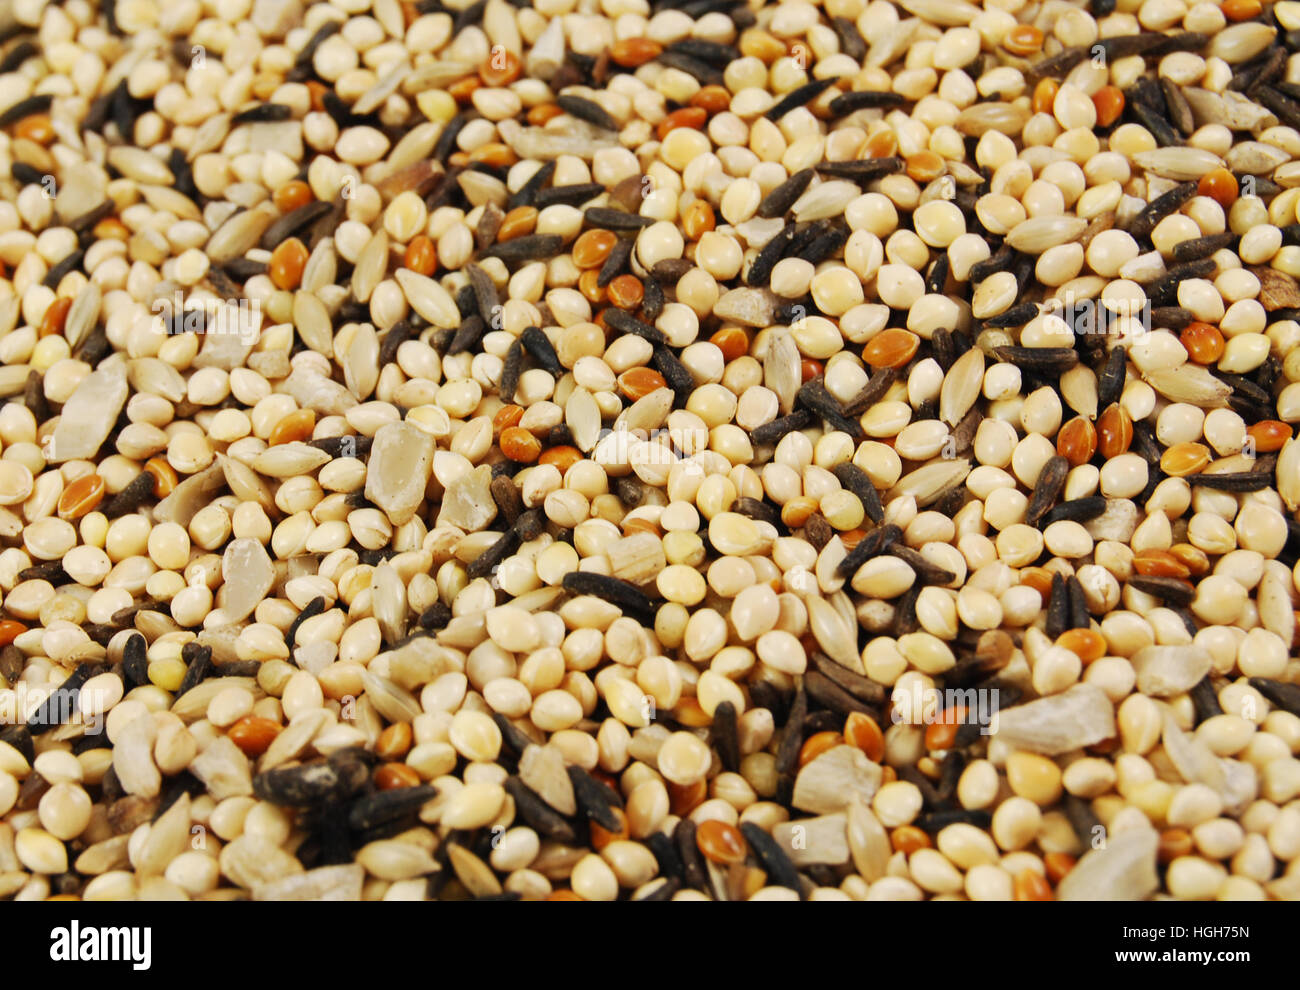 Des graines d'oiseaux Mixte - Millet et graines de chardon. Nourriture pour oiseaux en arrière-plan photo. Banque D'Images